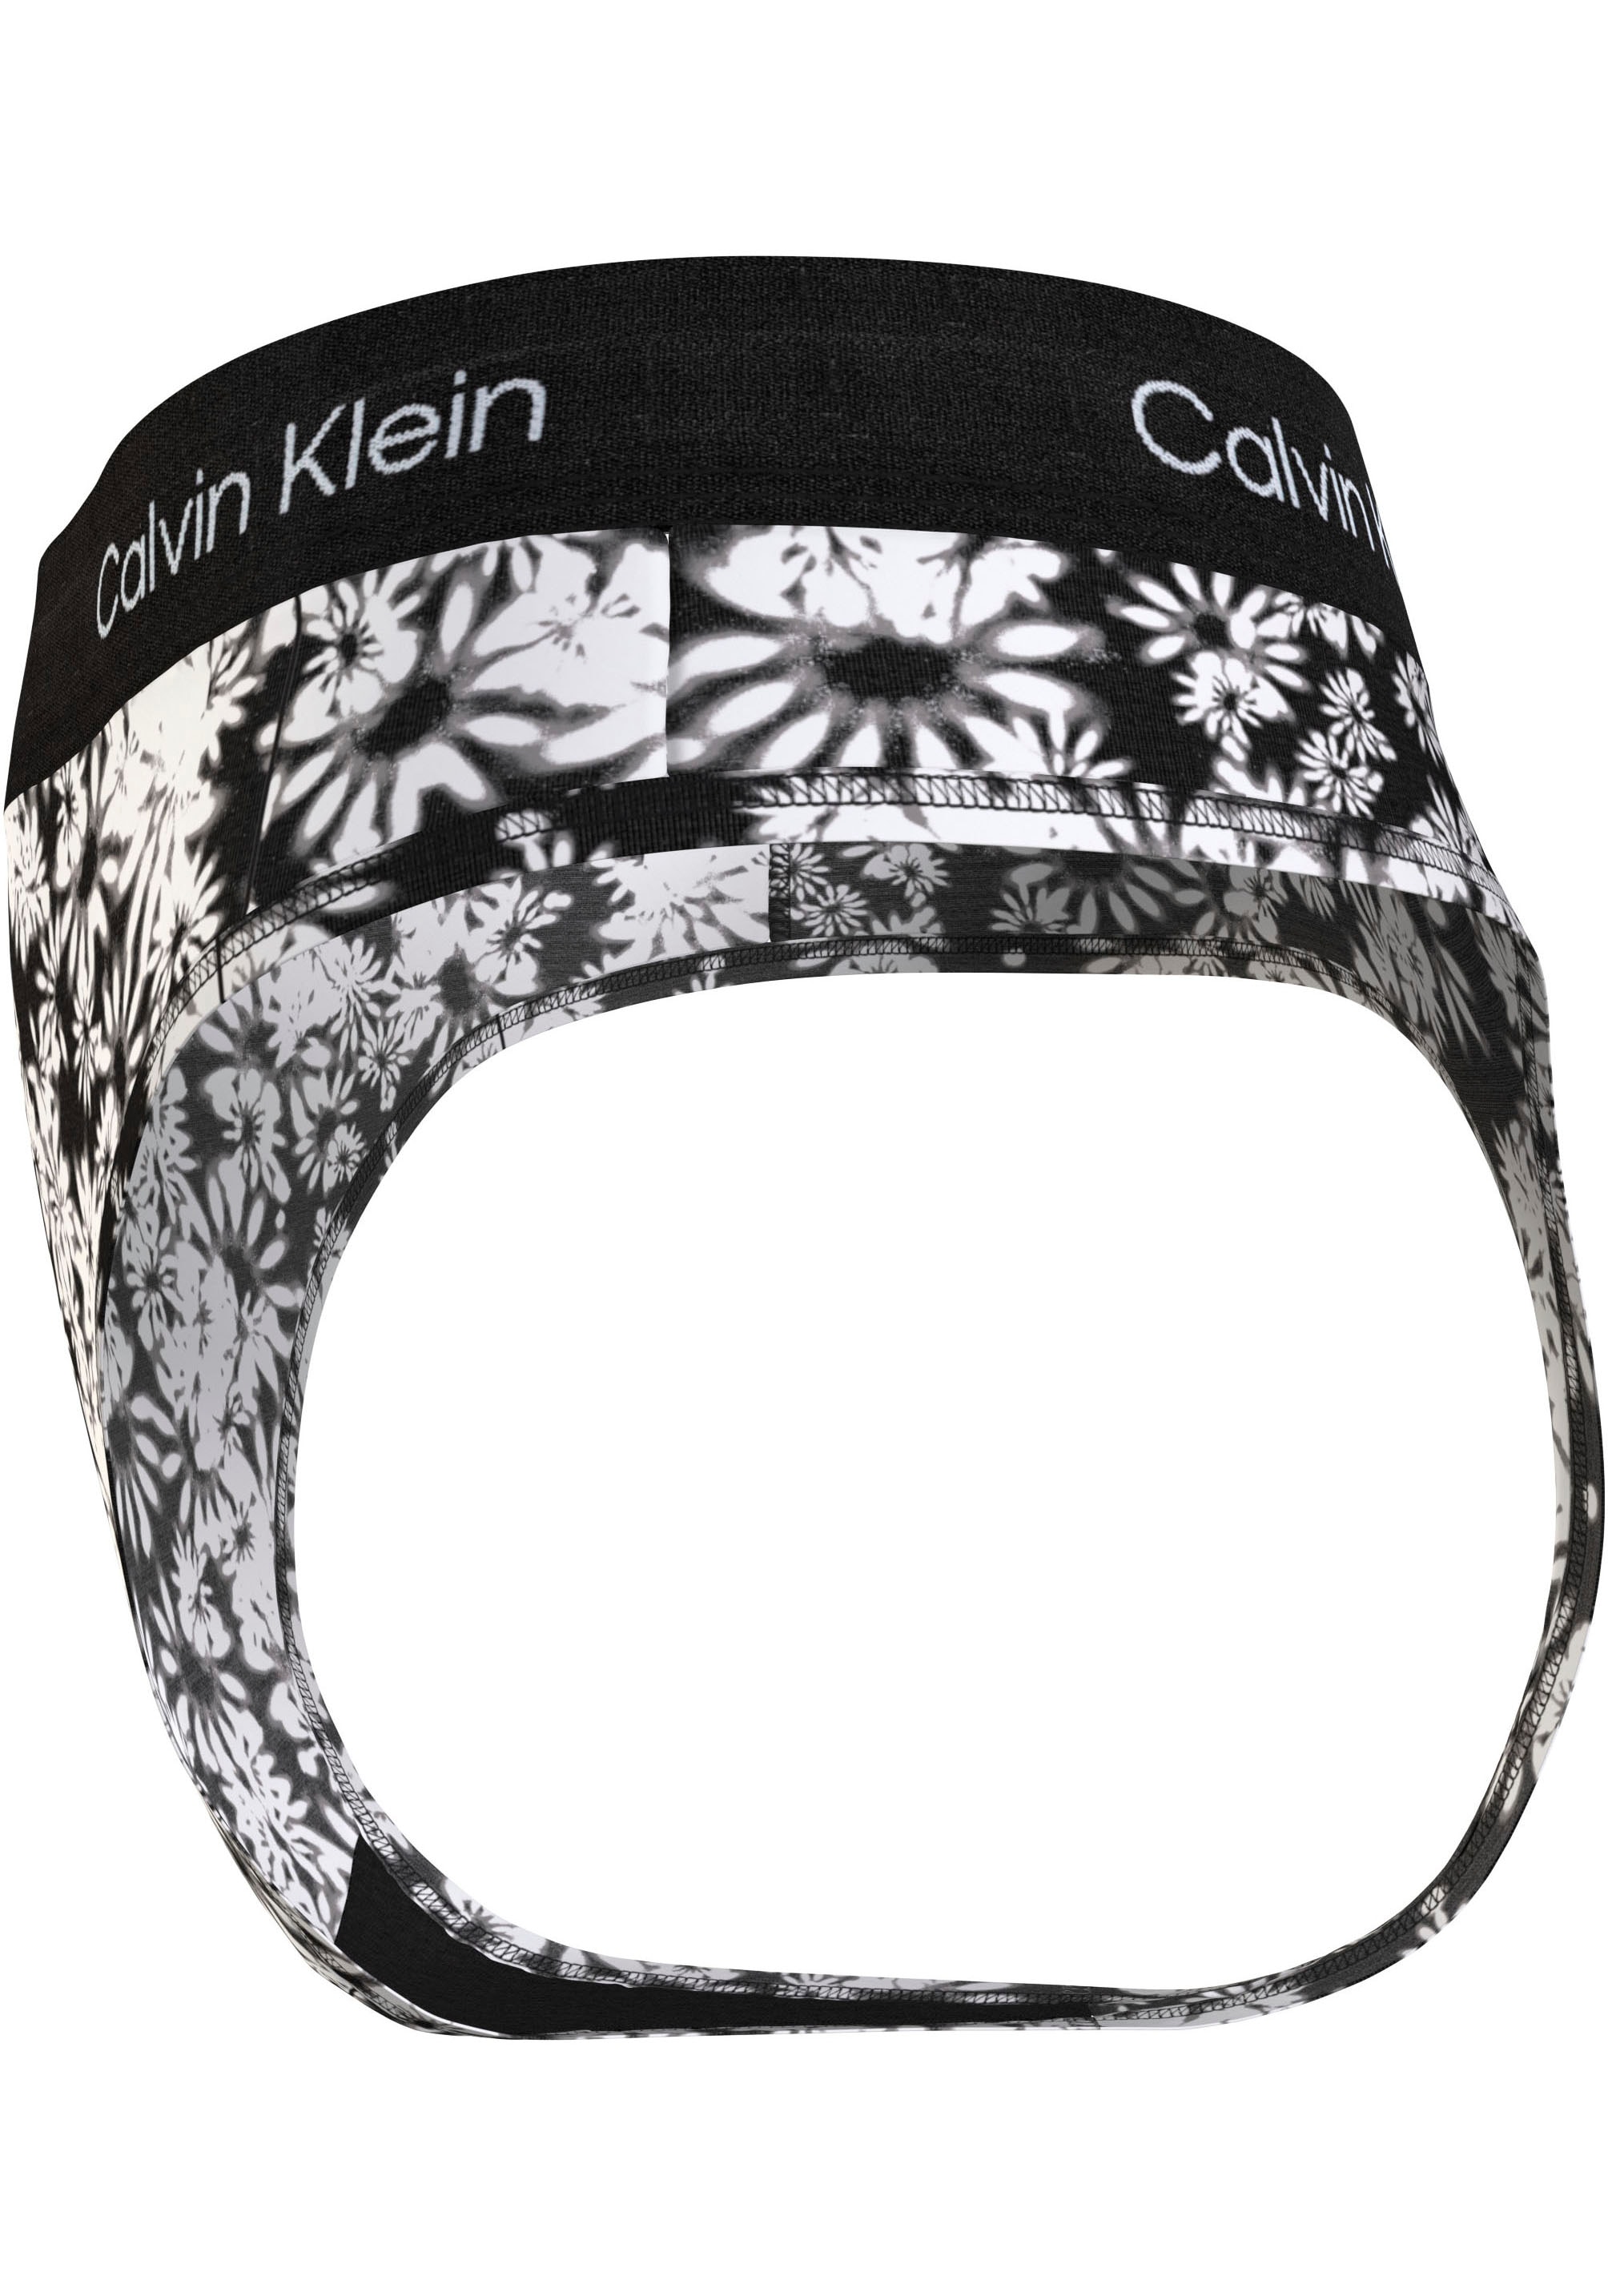 Calvin Klein Underwear T-String »MODERN THONG«, mit klassischem Logobund